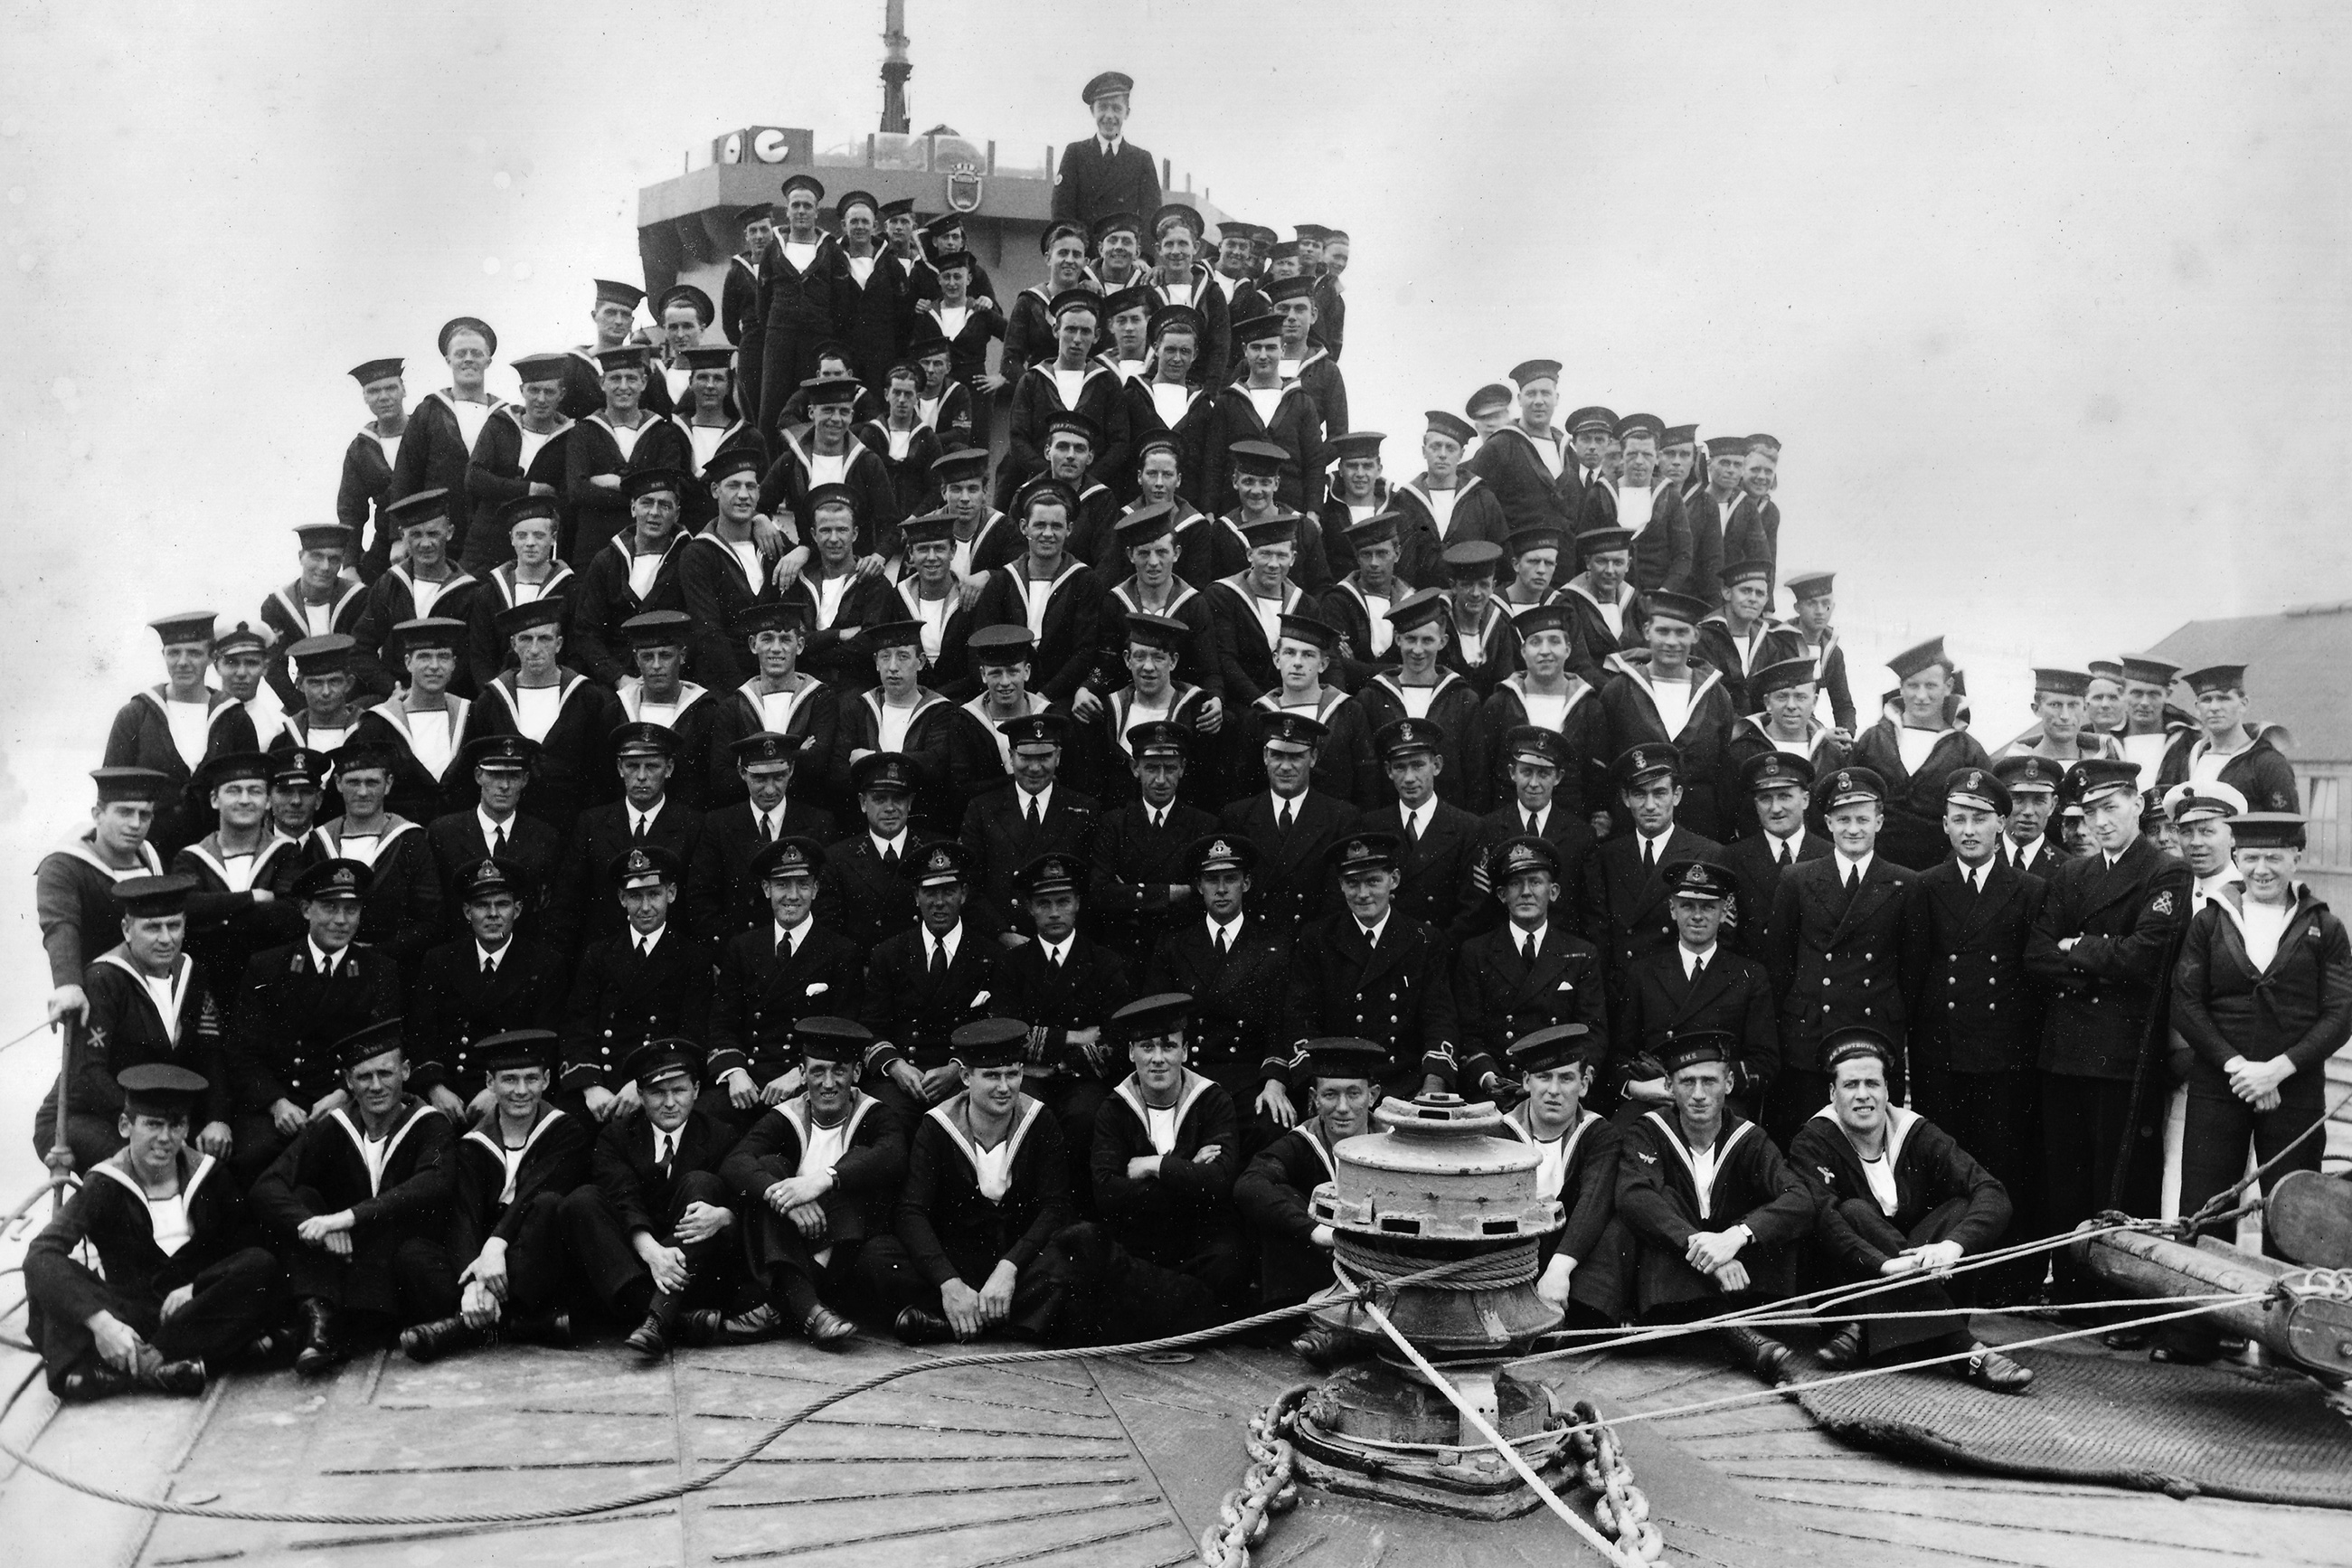 The Ship's Company of HMS Vimiera